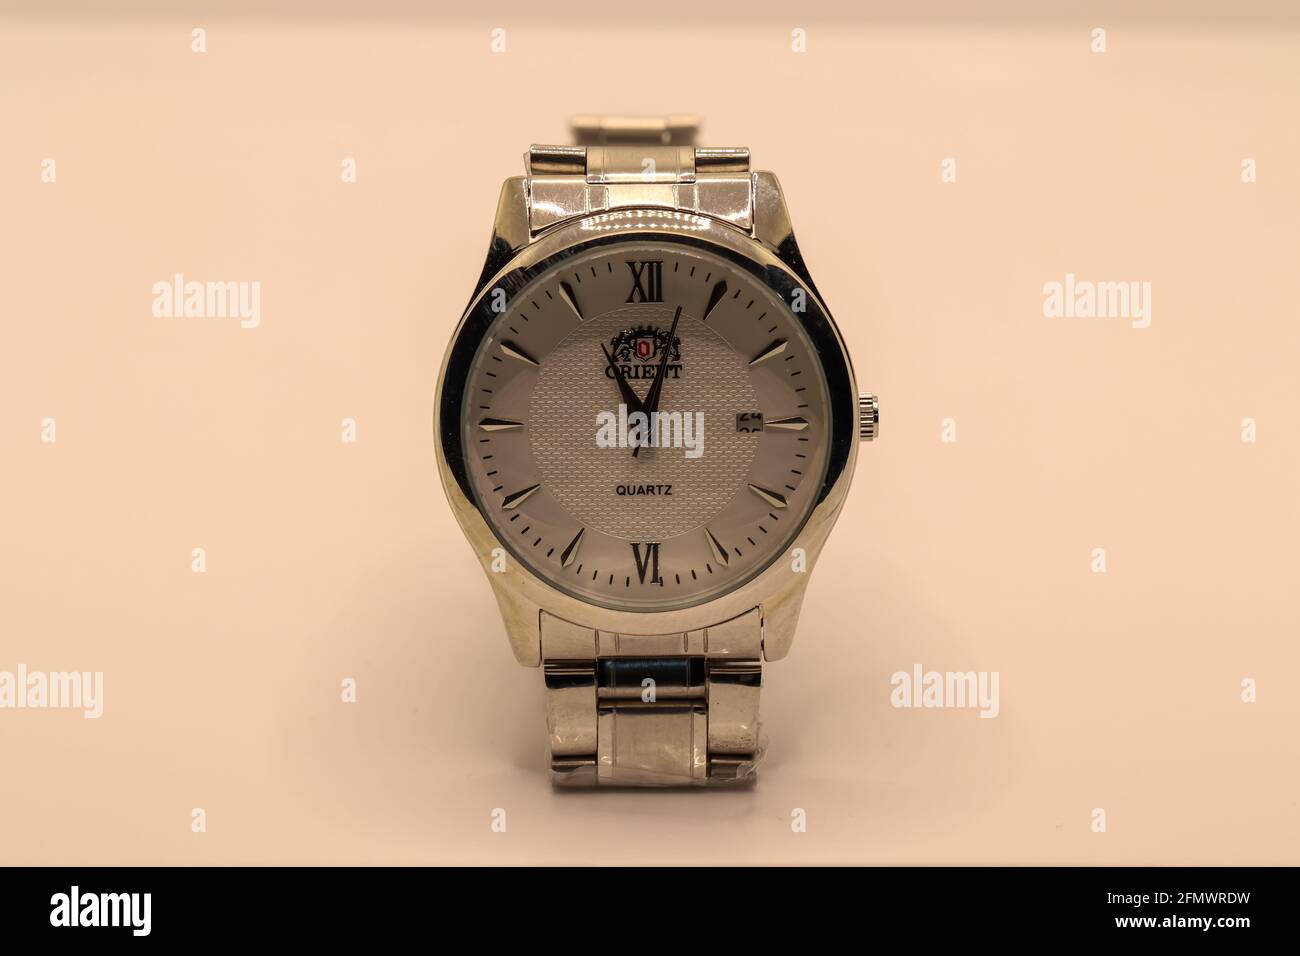 CHESTER, REGNO UNITO - 1 MAGGIO 2021: Orient è un marchio giapponese di orologi. Nella foto è raffigurato uno degli orologi d'argento dei loro uomini Foto Stock